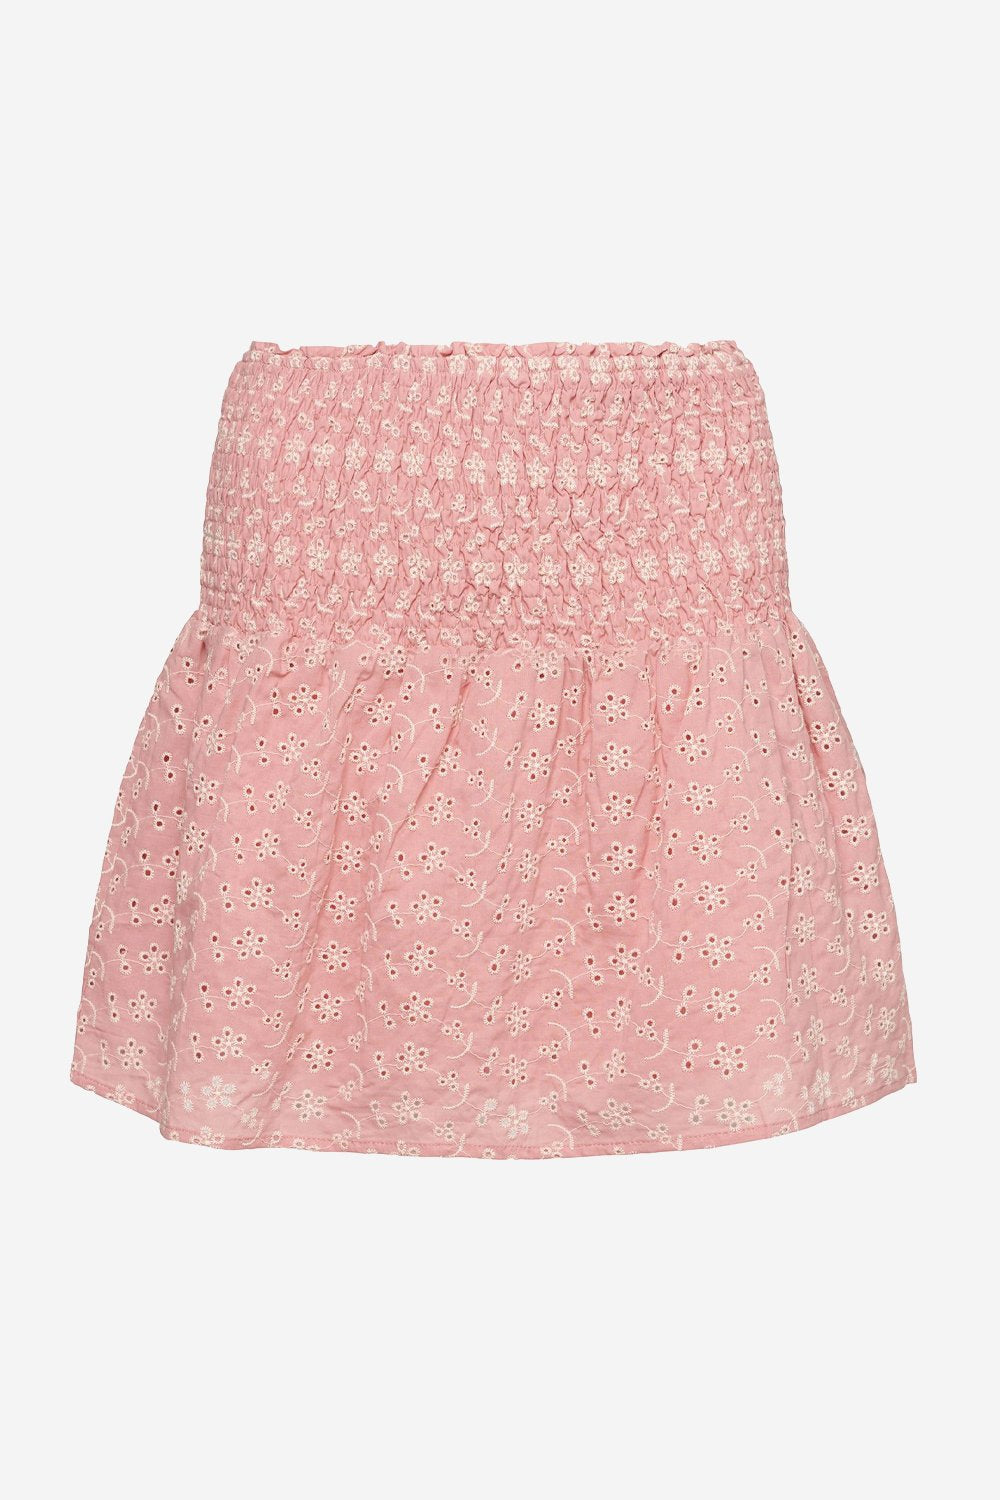 Blossom Skirt Cotton Broderie Rose